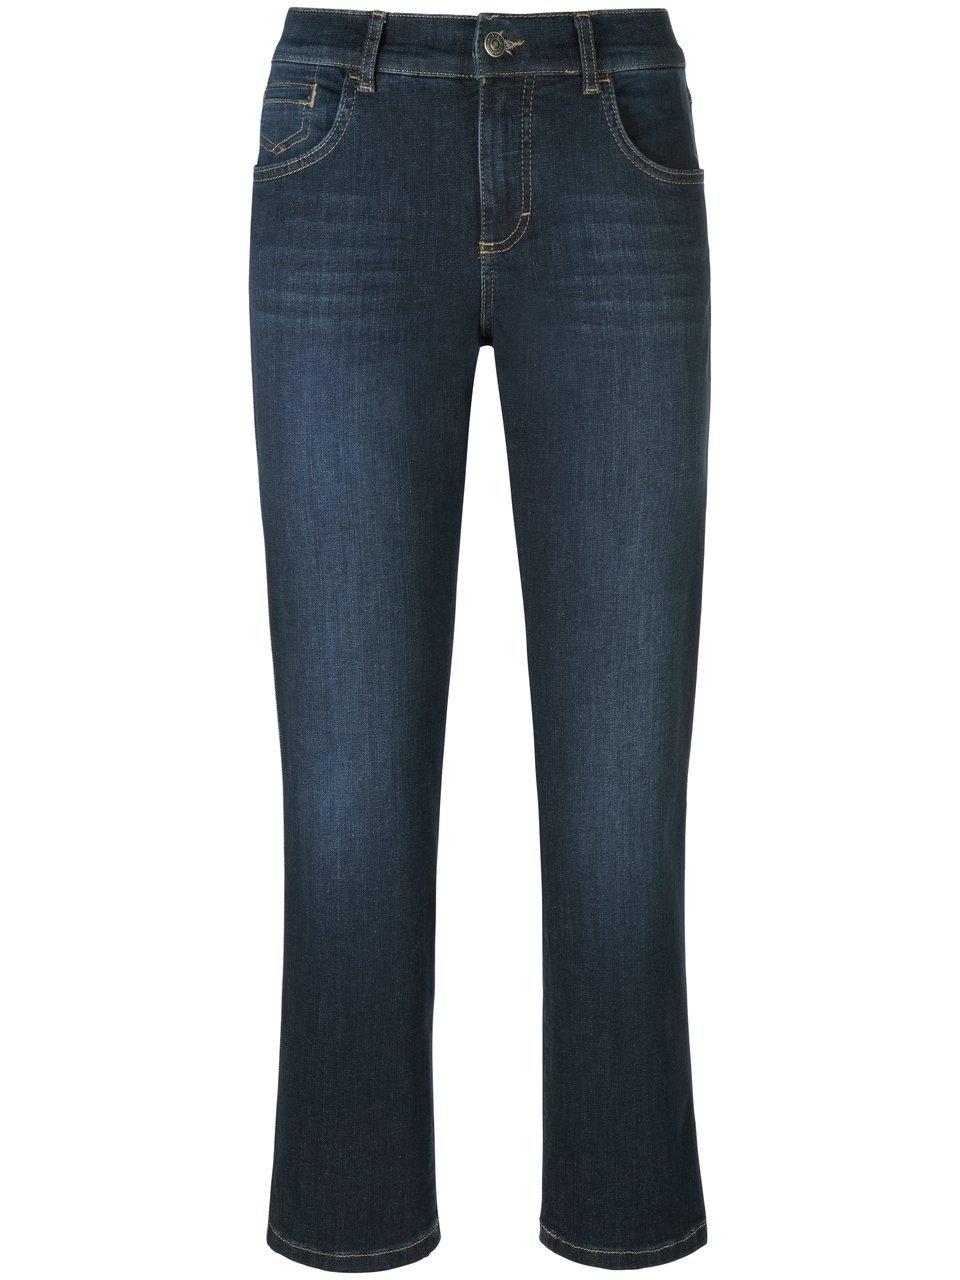 Enkellange jeans model Darleen Van ANGELS denim